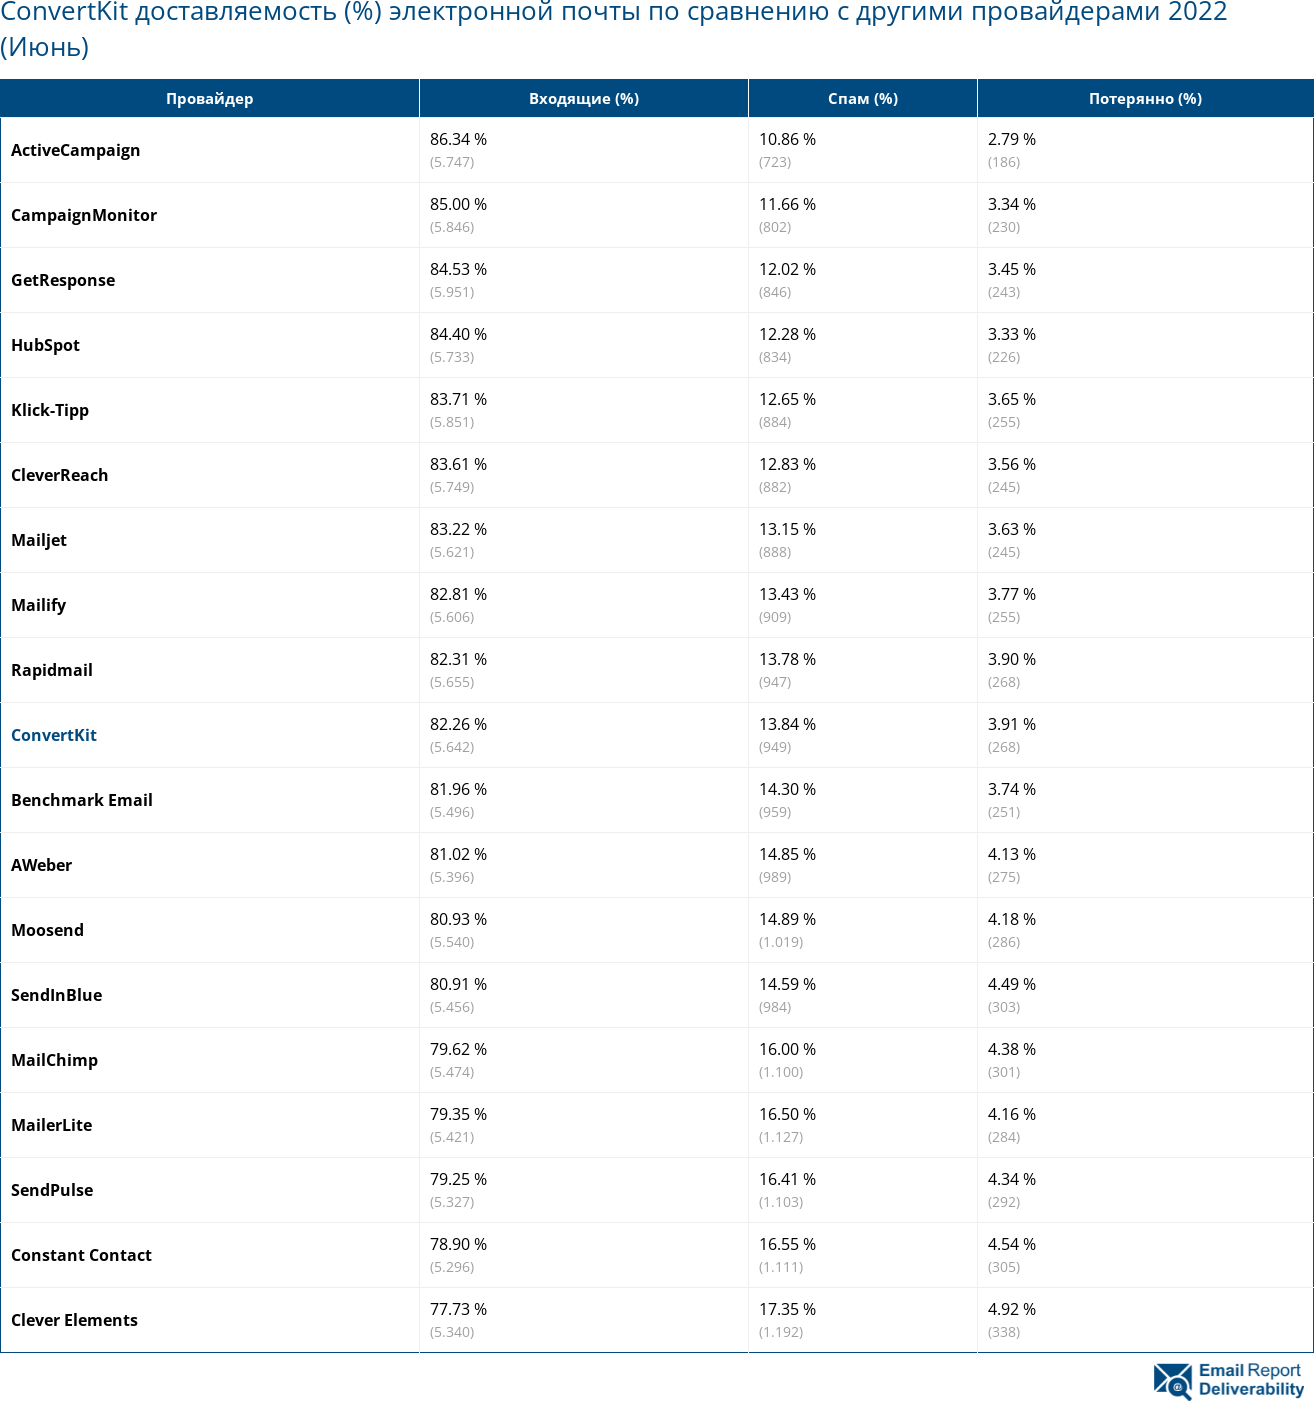 ConvertKit доставляемость (%) электронной почты по сравнению с другими провайдерами 2022 (Июнь)